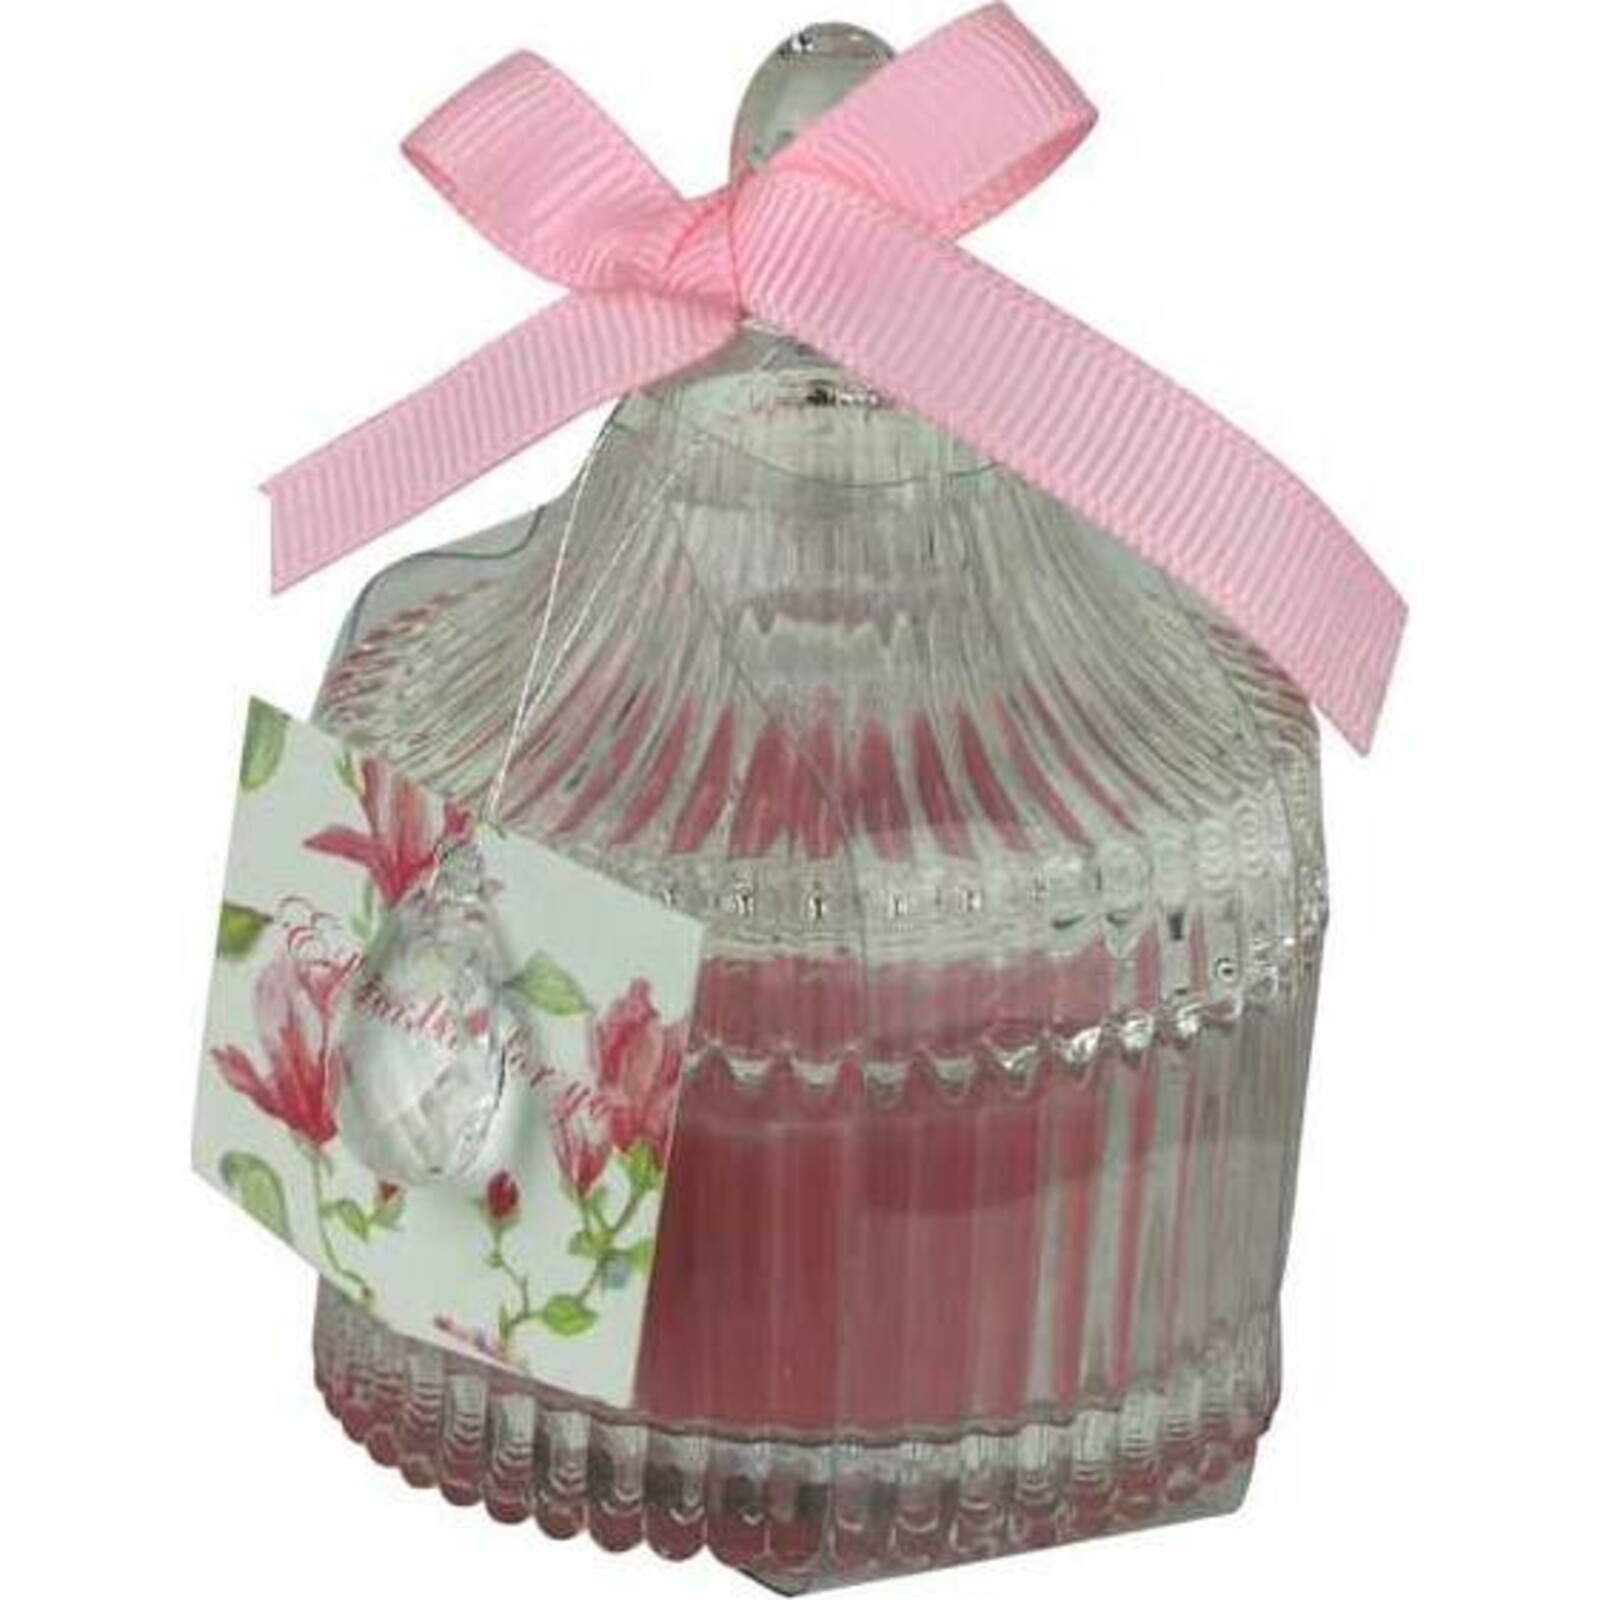 Candle Jar Ribb Pink